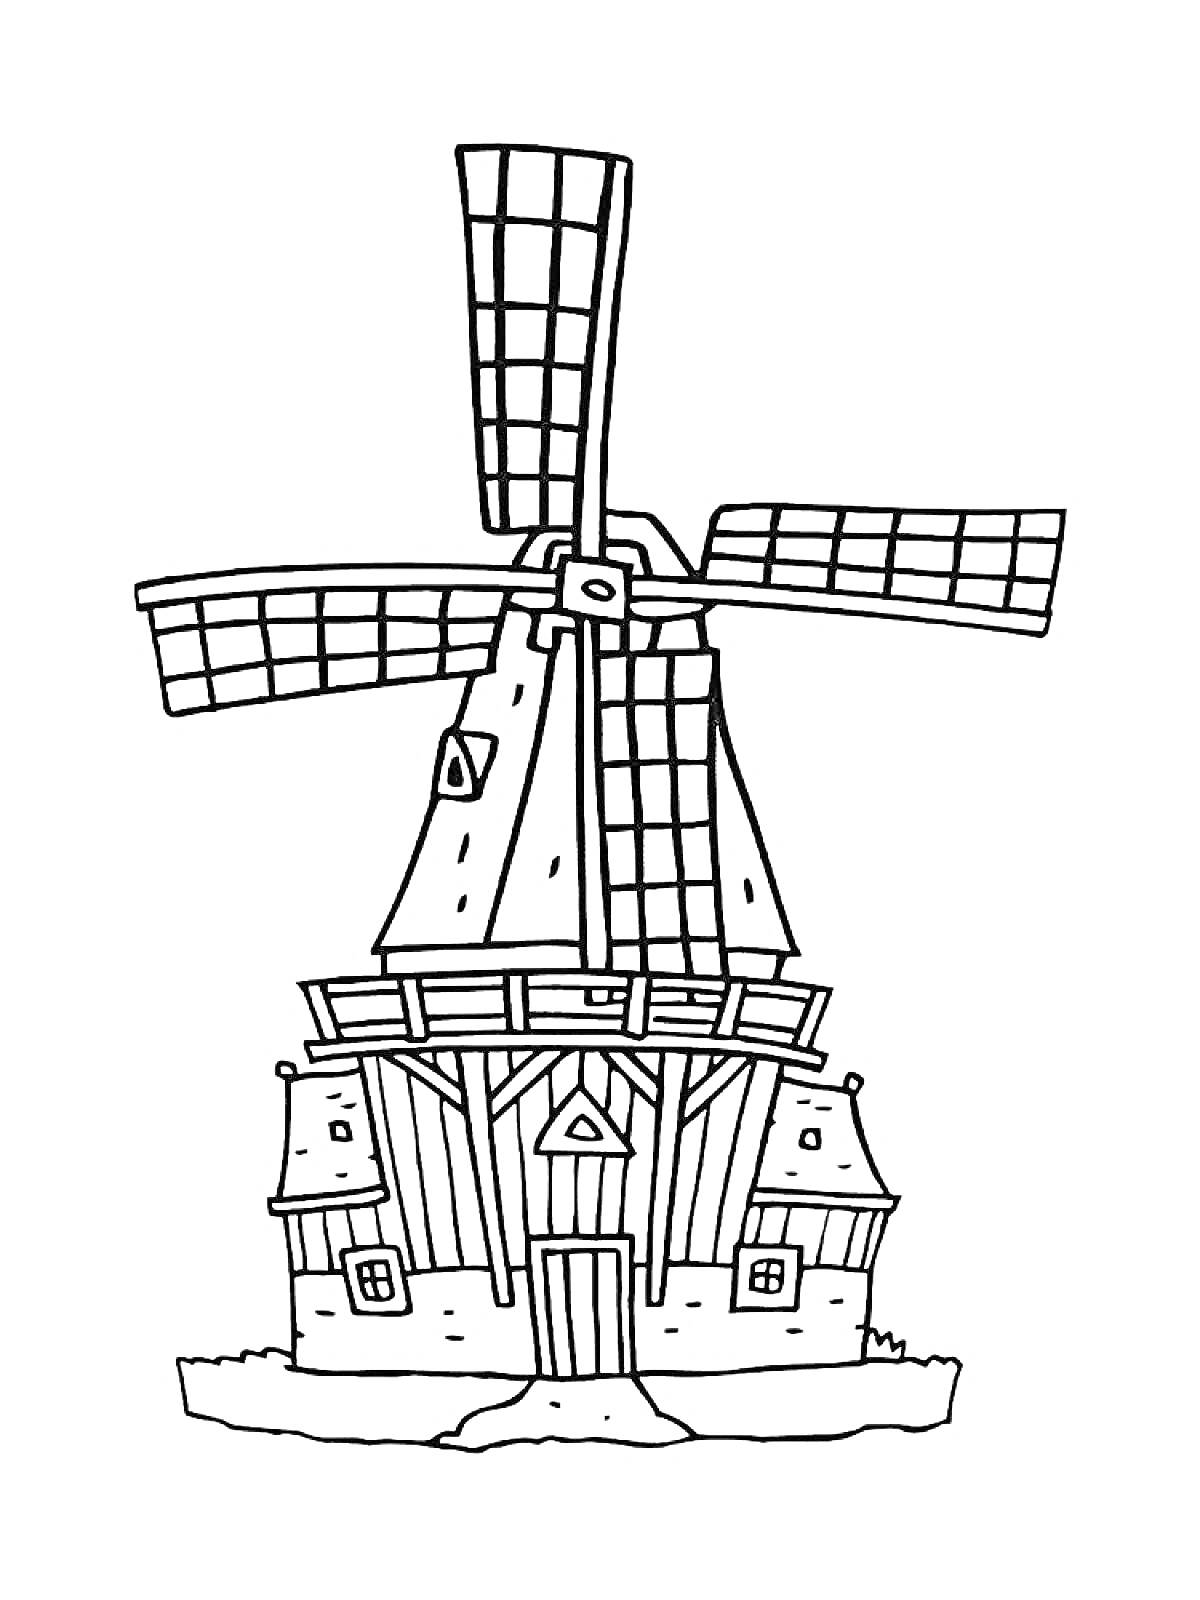 Мельница с большой крышей и четырьмя лопастями, домик снизу с двумя окнами и дверью, небольшой участок травы